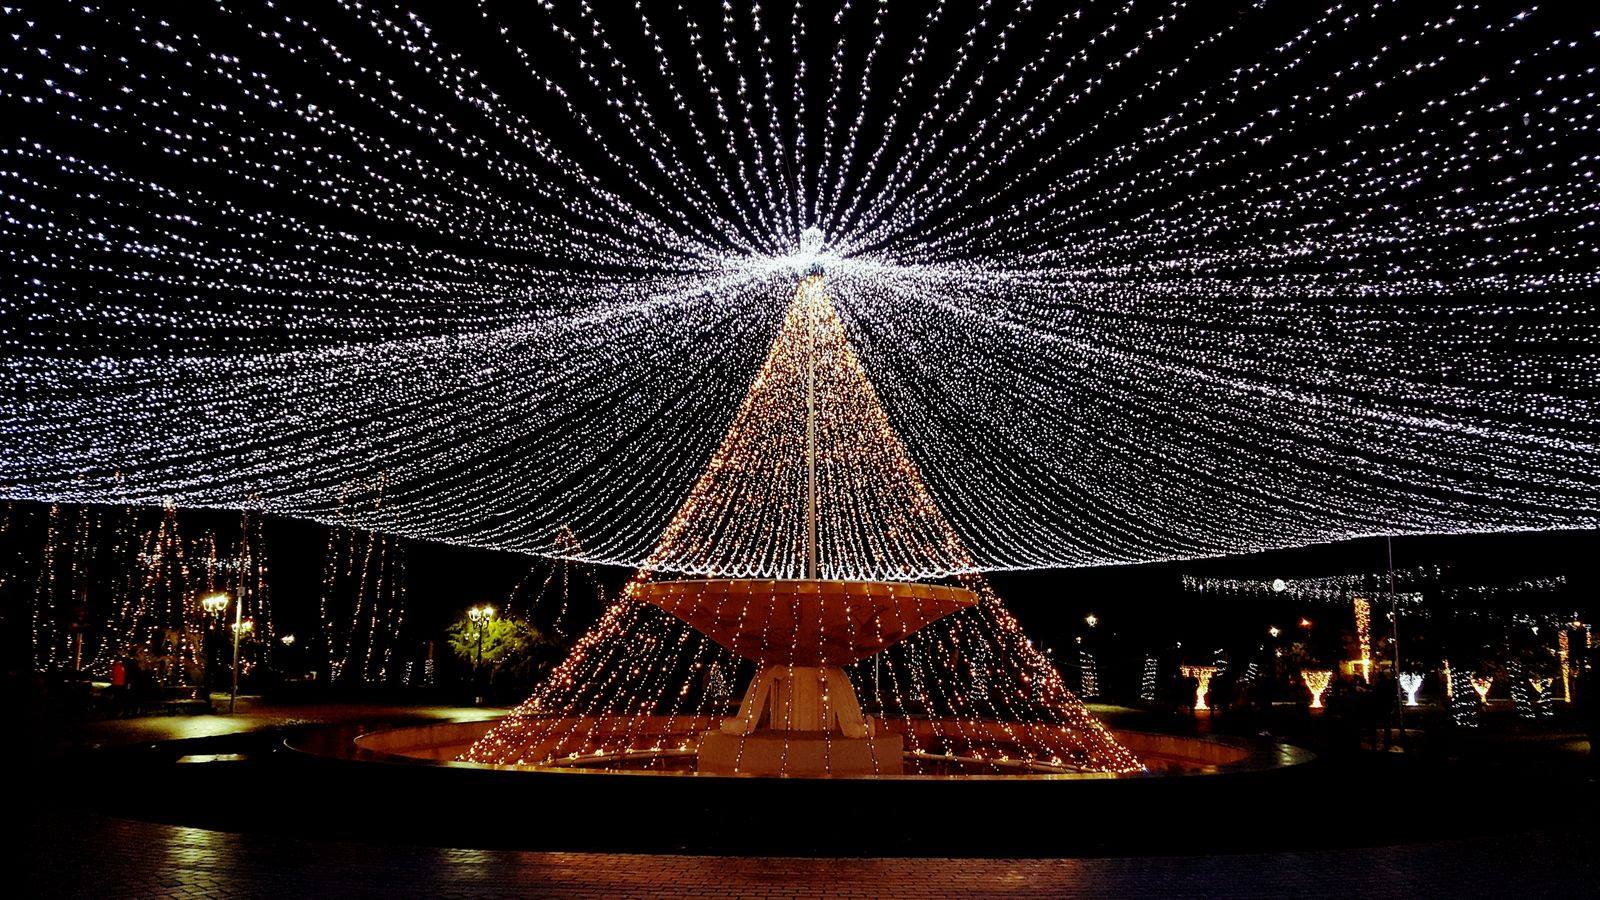 Christmas time / Sea of lights